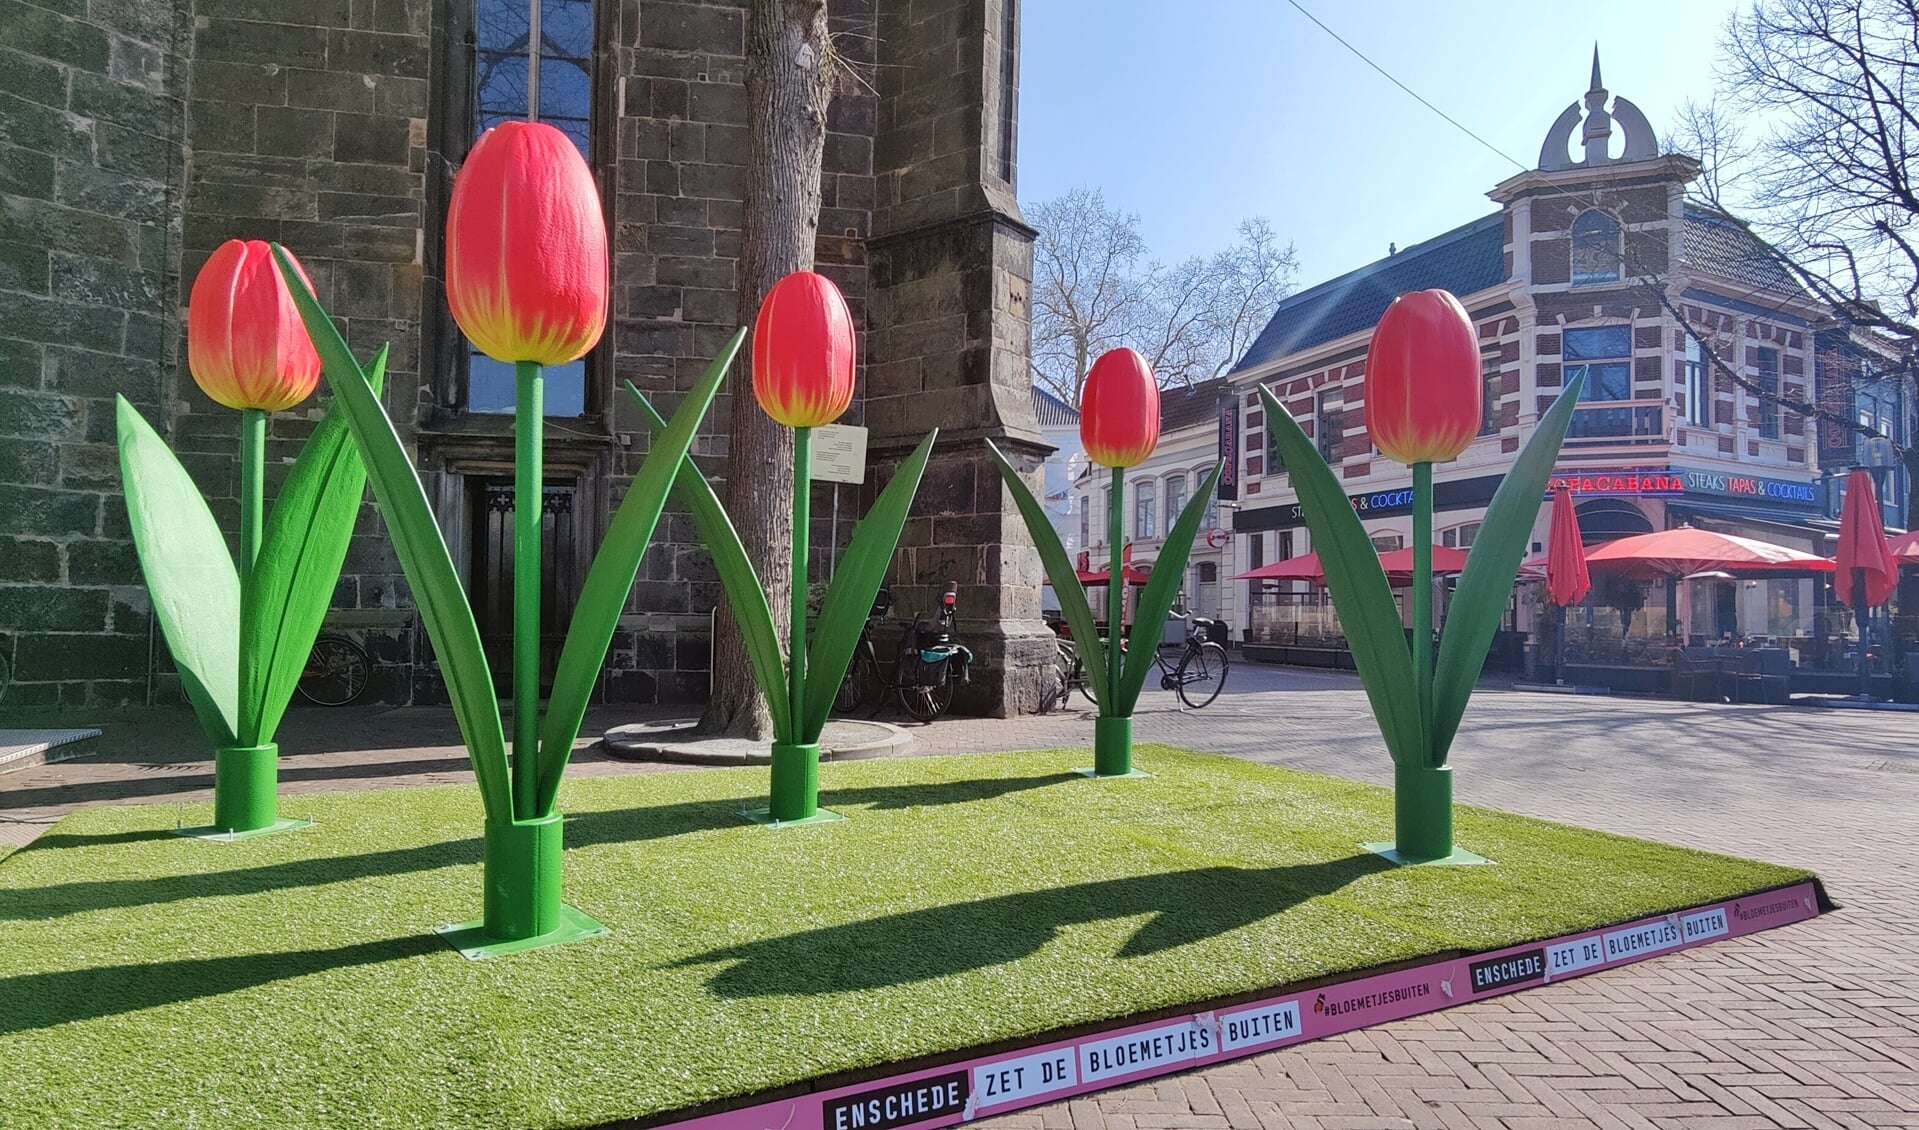 Mega tulpen op de Oude Markt. Zie voor de activiteiten www.uitinenschede.nl/lente.